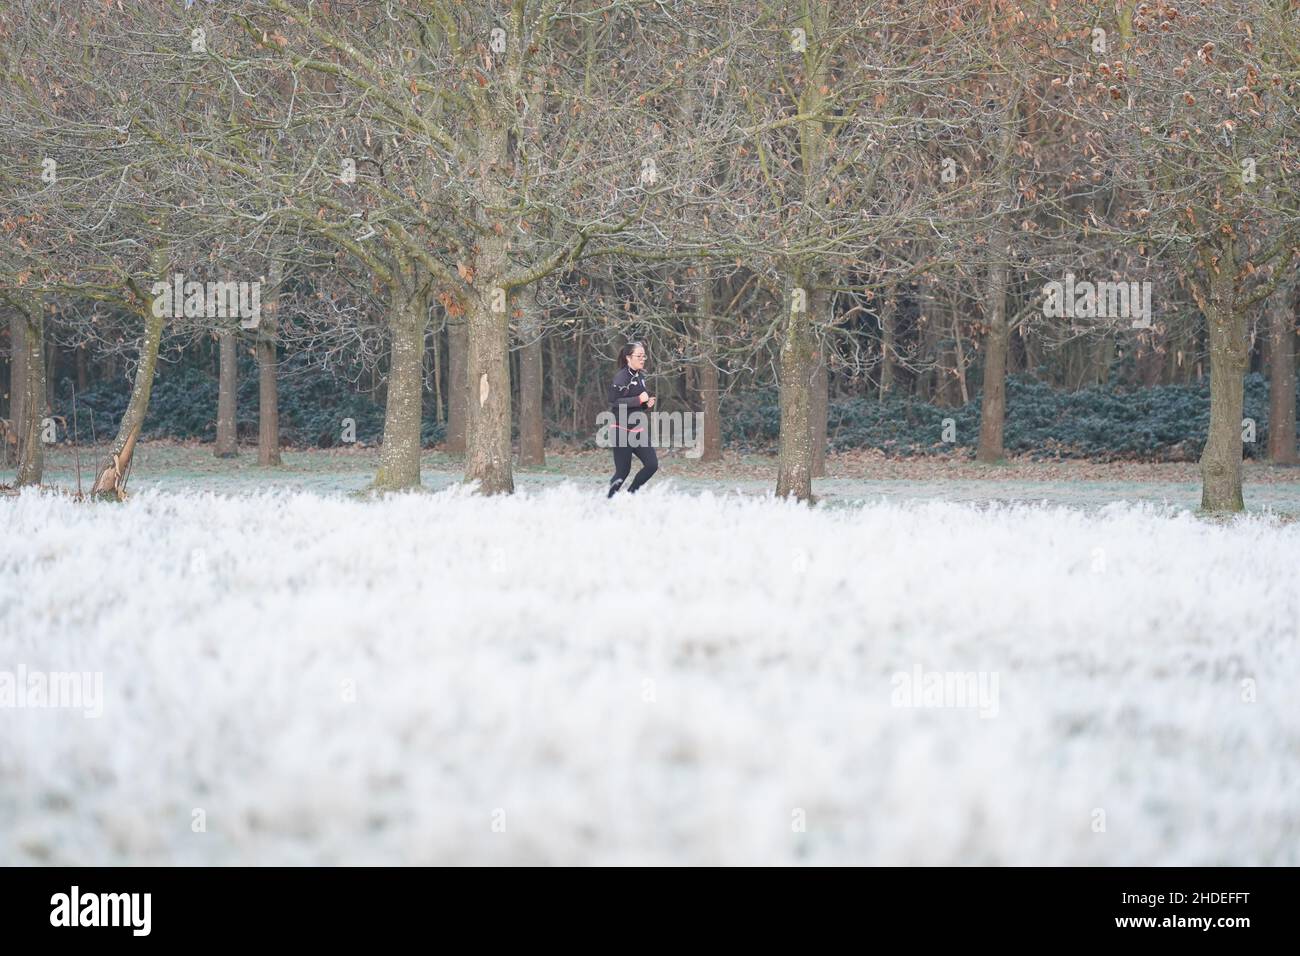 Nach einer Nacht mit niedrigen Temperaturen in der Hauptstadt läuft ein Jogger durch frostbedecktes Gras im Wanstead Park im Nordosten Londons. Wetterprognosen prognostizieren später am Morgen über den Norden Englands neue Schneefälle. Bilddatum: Donnerstag, 6. Januar 2022. Stockfoto